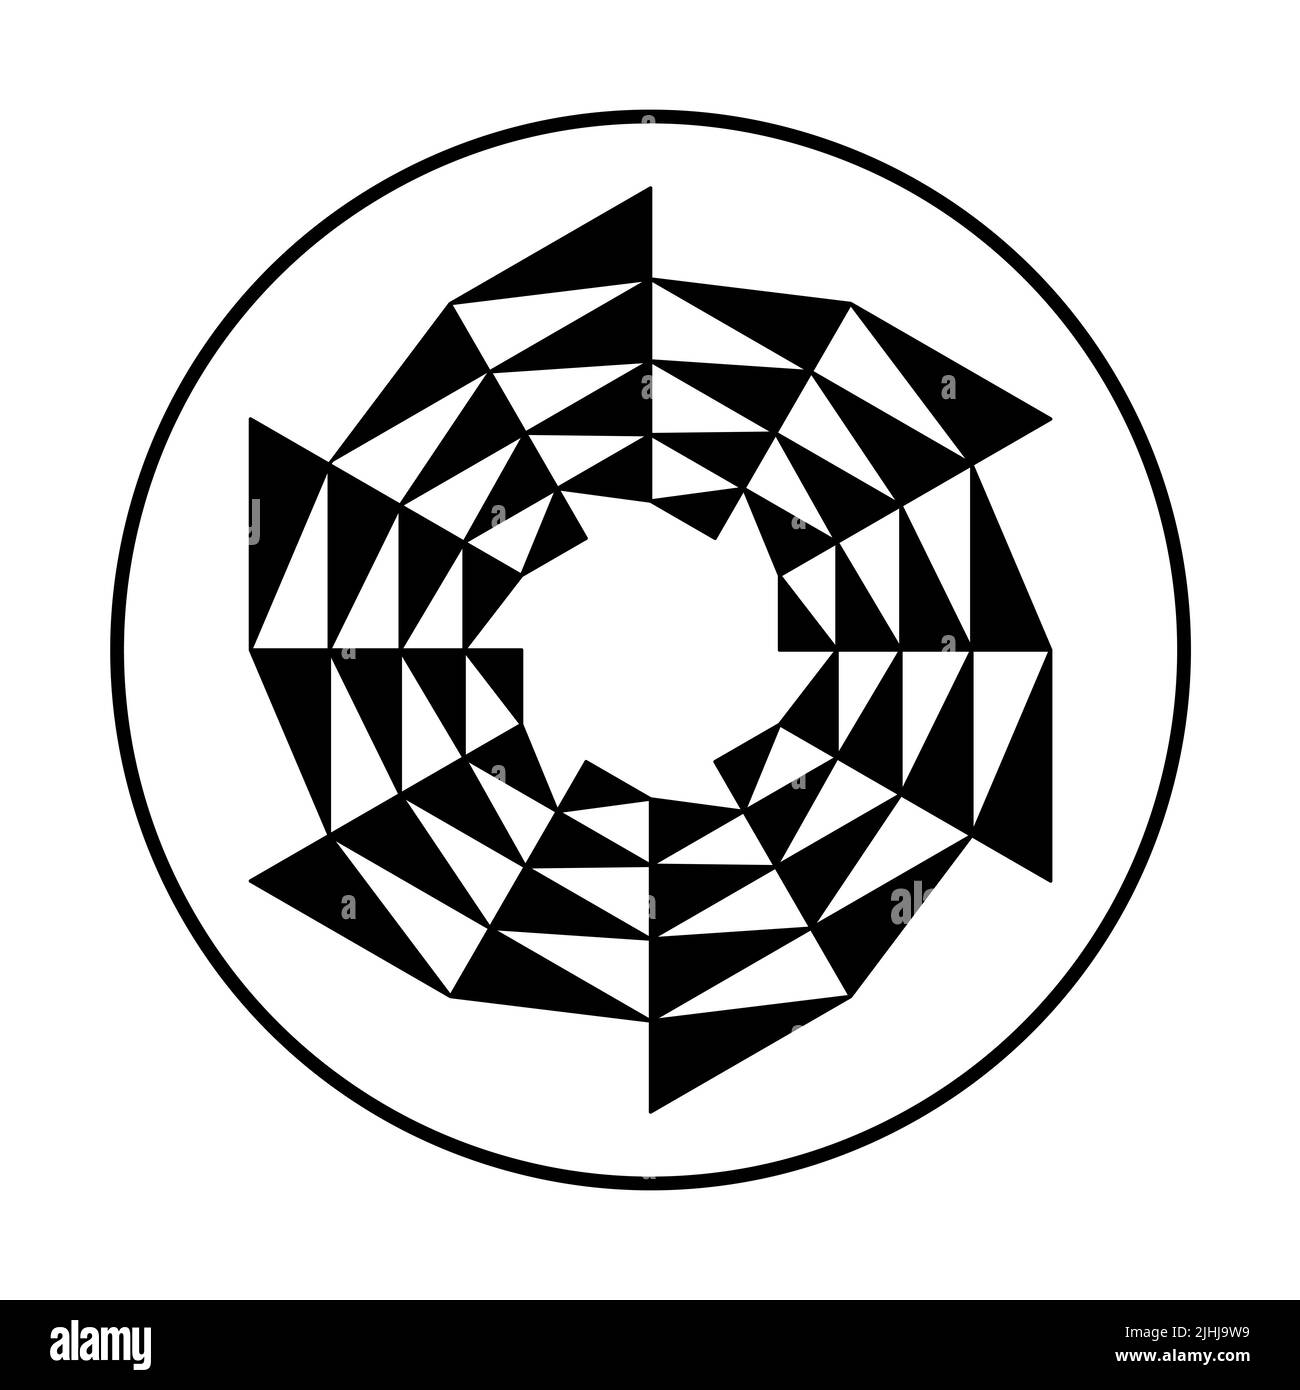 Kreisförmiges Sägeblatt, dreieckiges Muster in einem Kreis. Schwarze Dreiecke bilden ein kreisförmiges Sägeblatt, das sich im Uhrzeigersinn bewegt, als Symbol für den Wechsel. Stockfoto